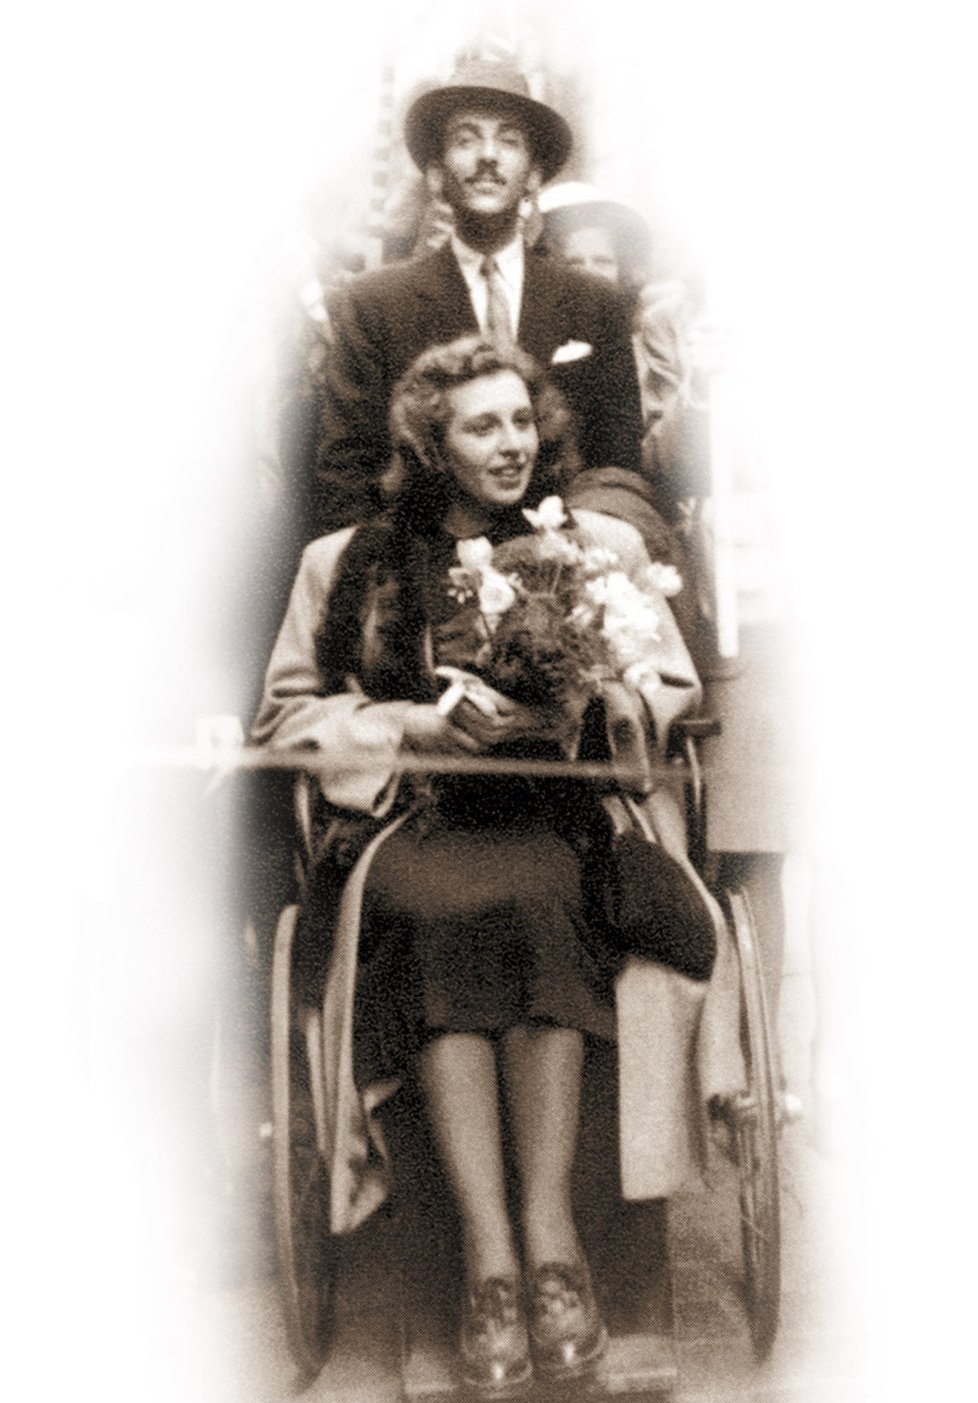 Bláznivá svatba Zázvorkové a Kopeckého se částečně odehrála na vozíku ve stylu Švejka